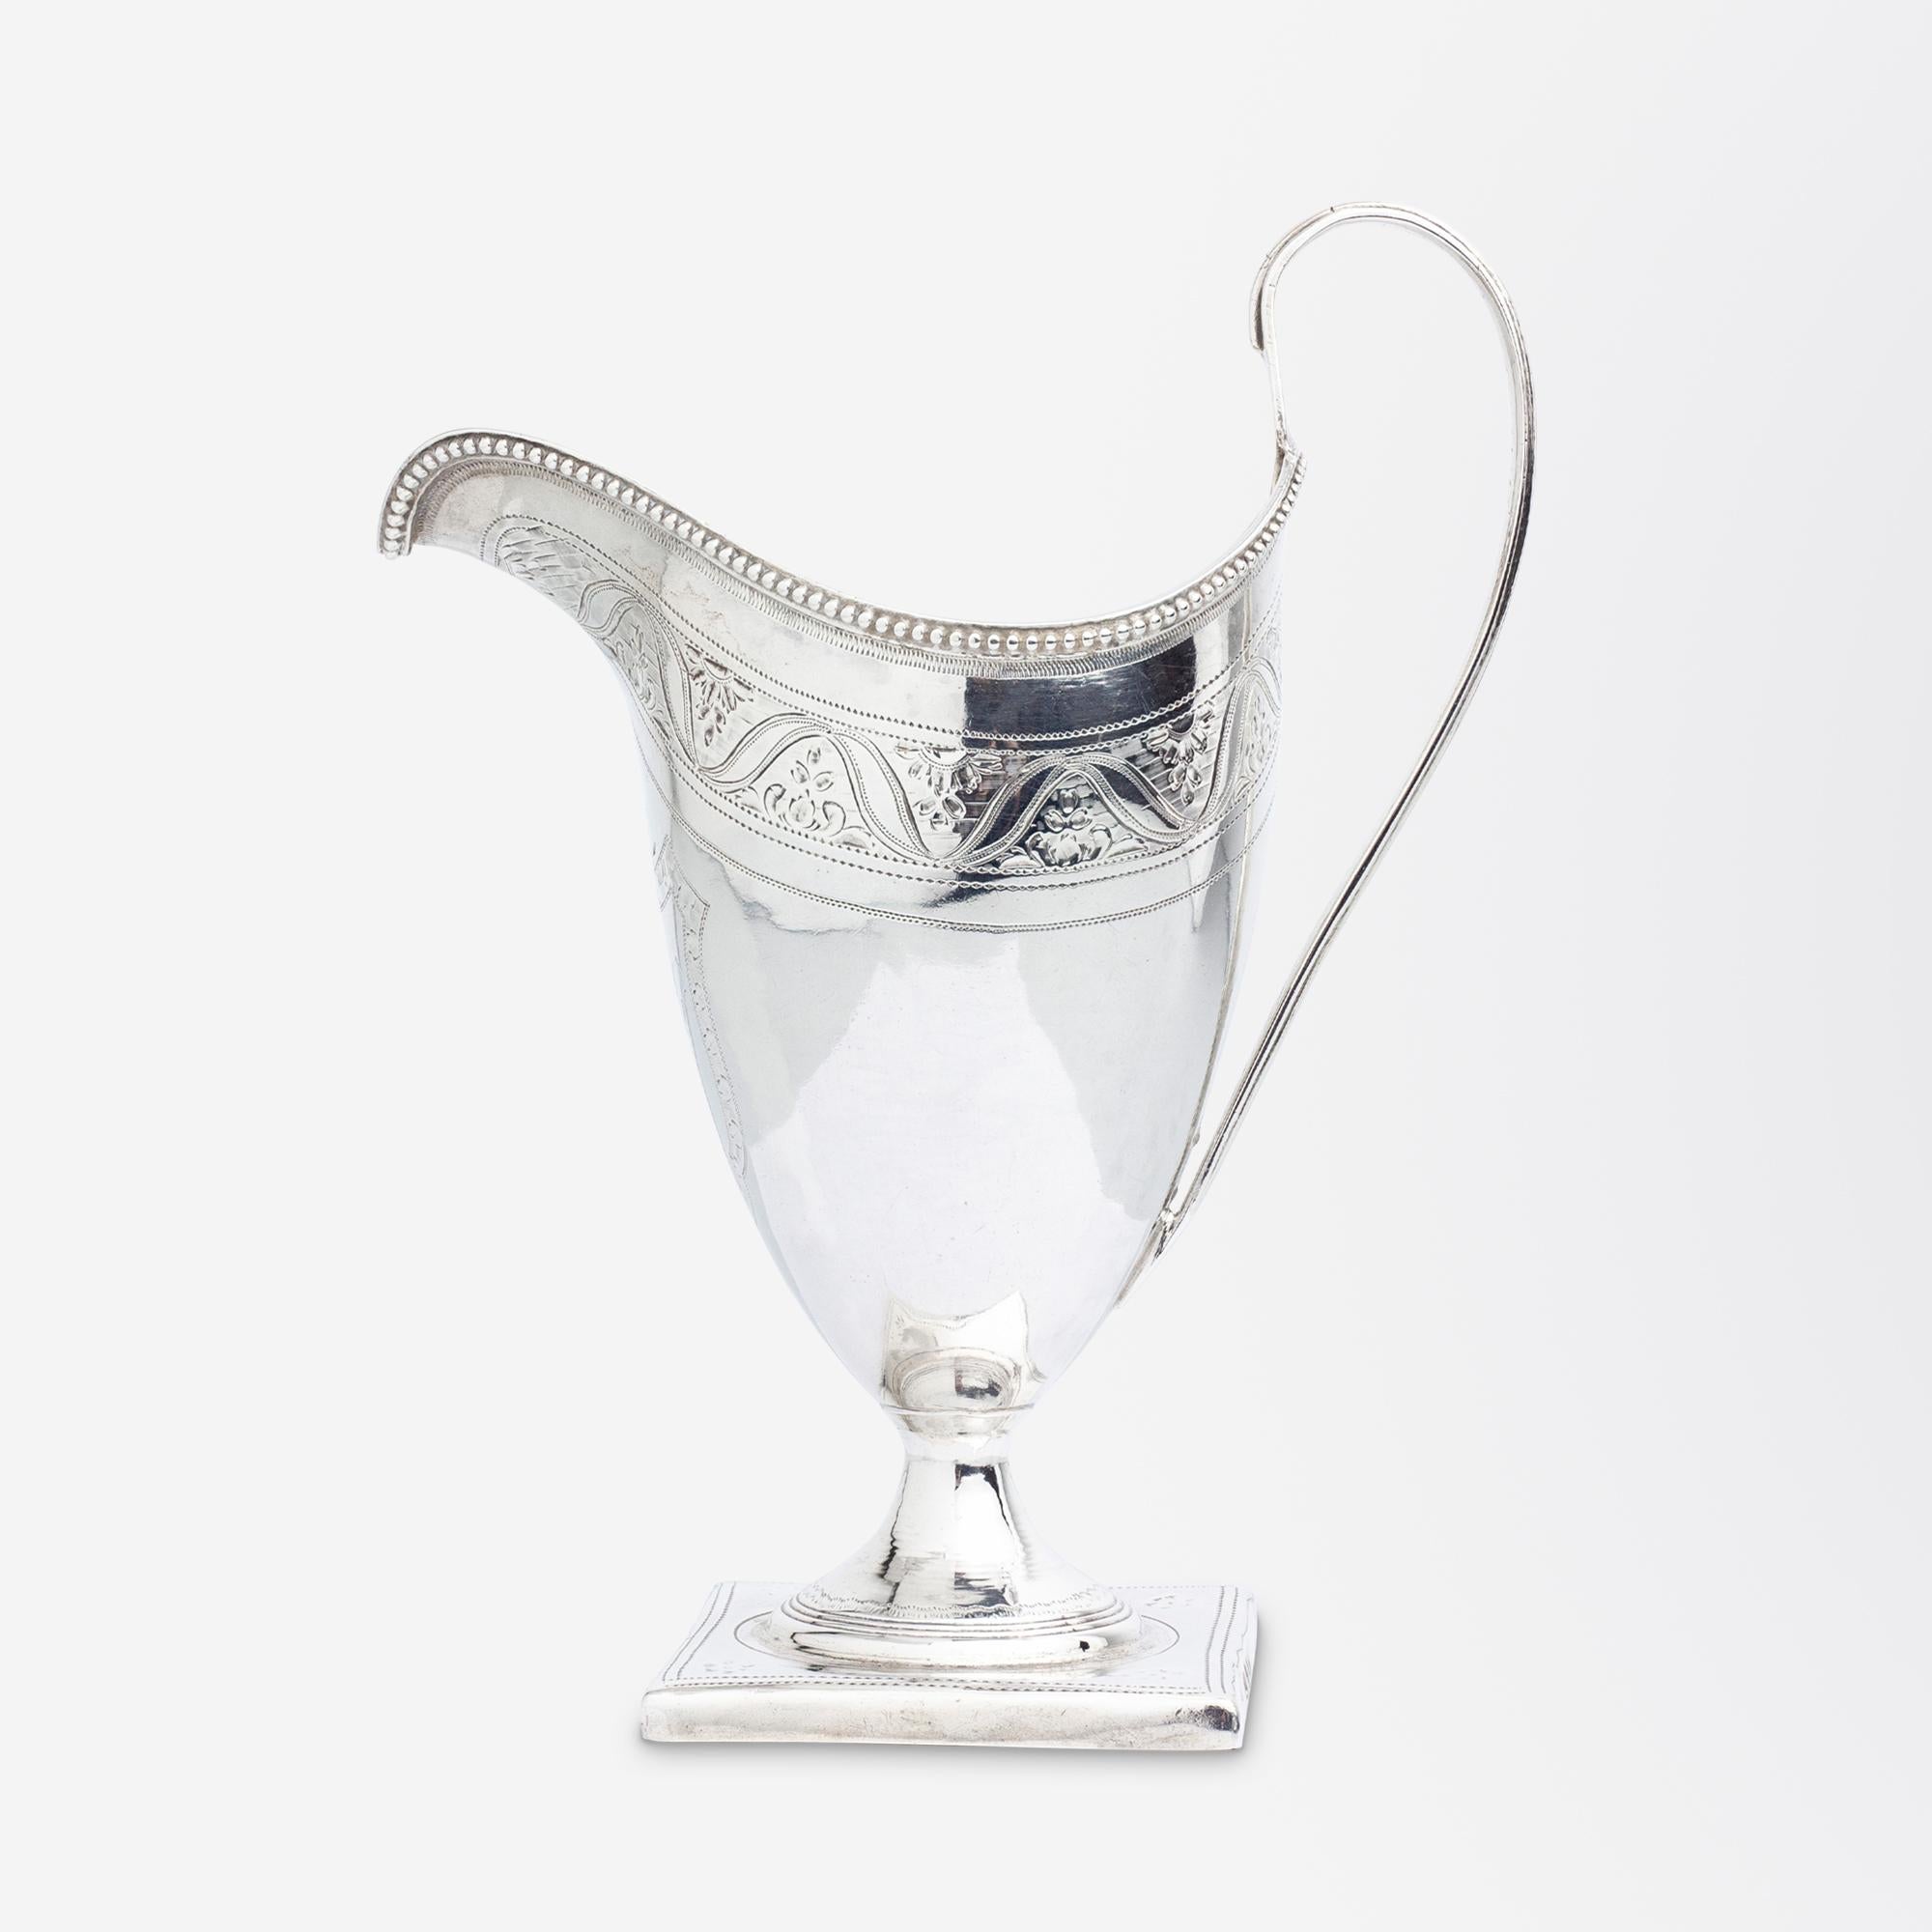 Silberne Milchkanne aus der Zeit von George III. mit monogrammiertem Wappen und Perlenrand von Peter & Ann Bateman aus der famosen Silberschmiedefamilie Bateman. Dieses hübsche Milchkännchen steht auf einem quadratischen Fuß und hat einen für die